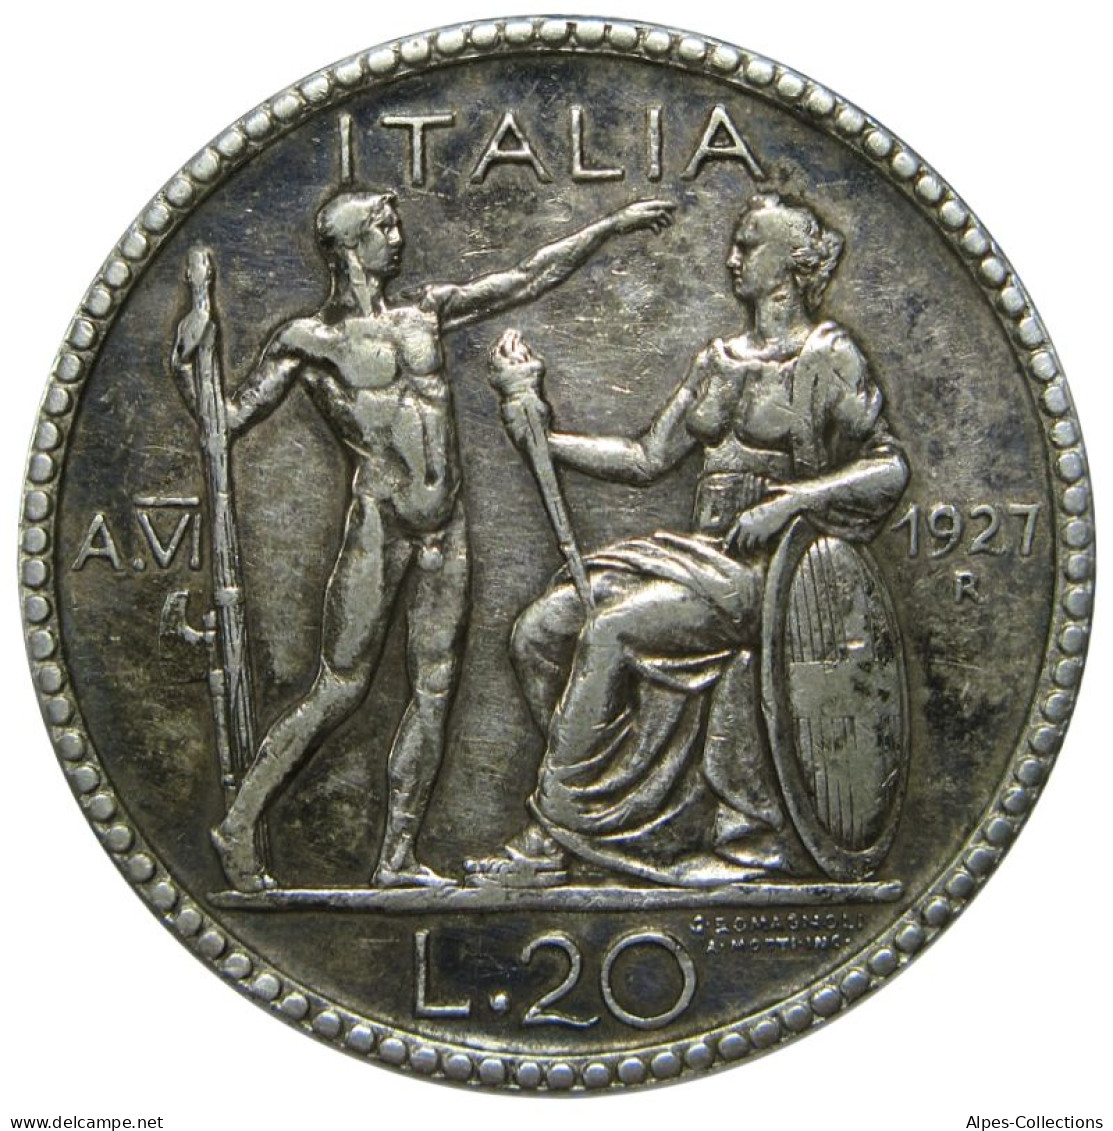 ITA069 - ITALIE - ROYAUME D'ITALIE - VICTOR-EMMANUEL III - 20 Lire 1927 R - 1900-1946 : Vittorio Emanuele III & Umberto II